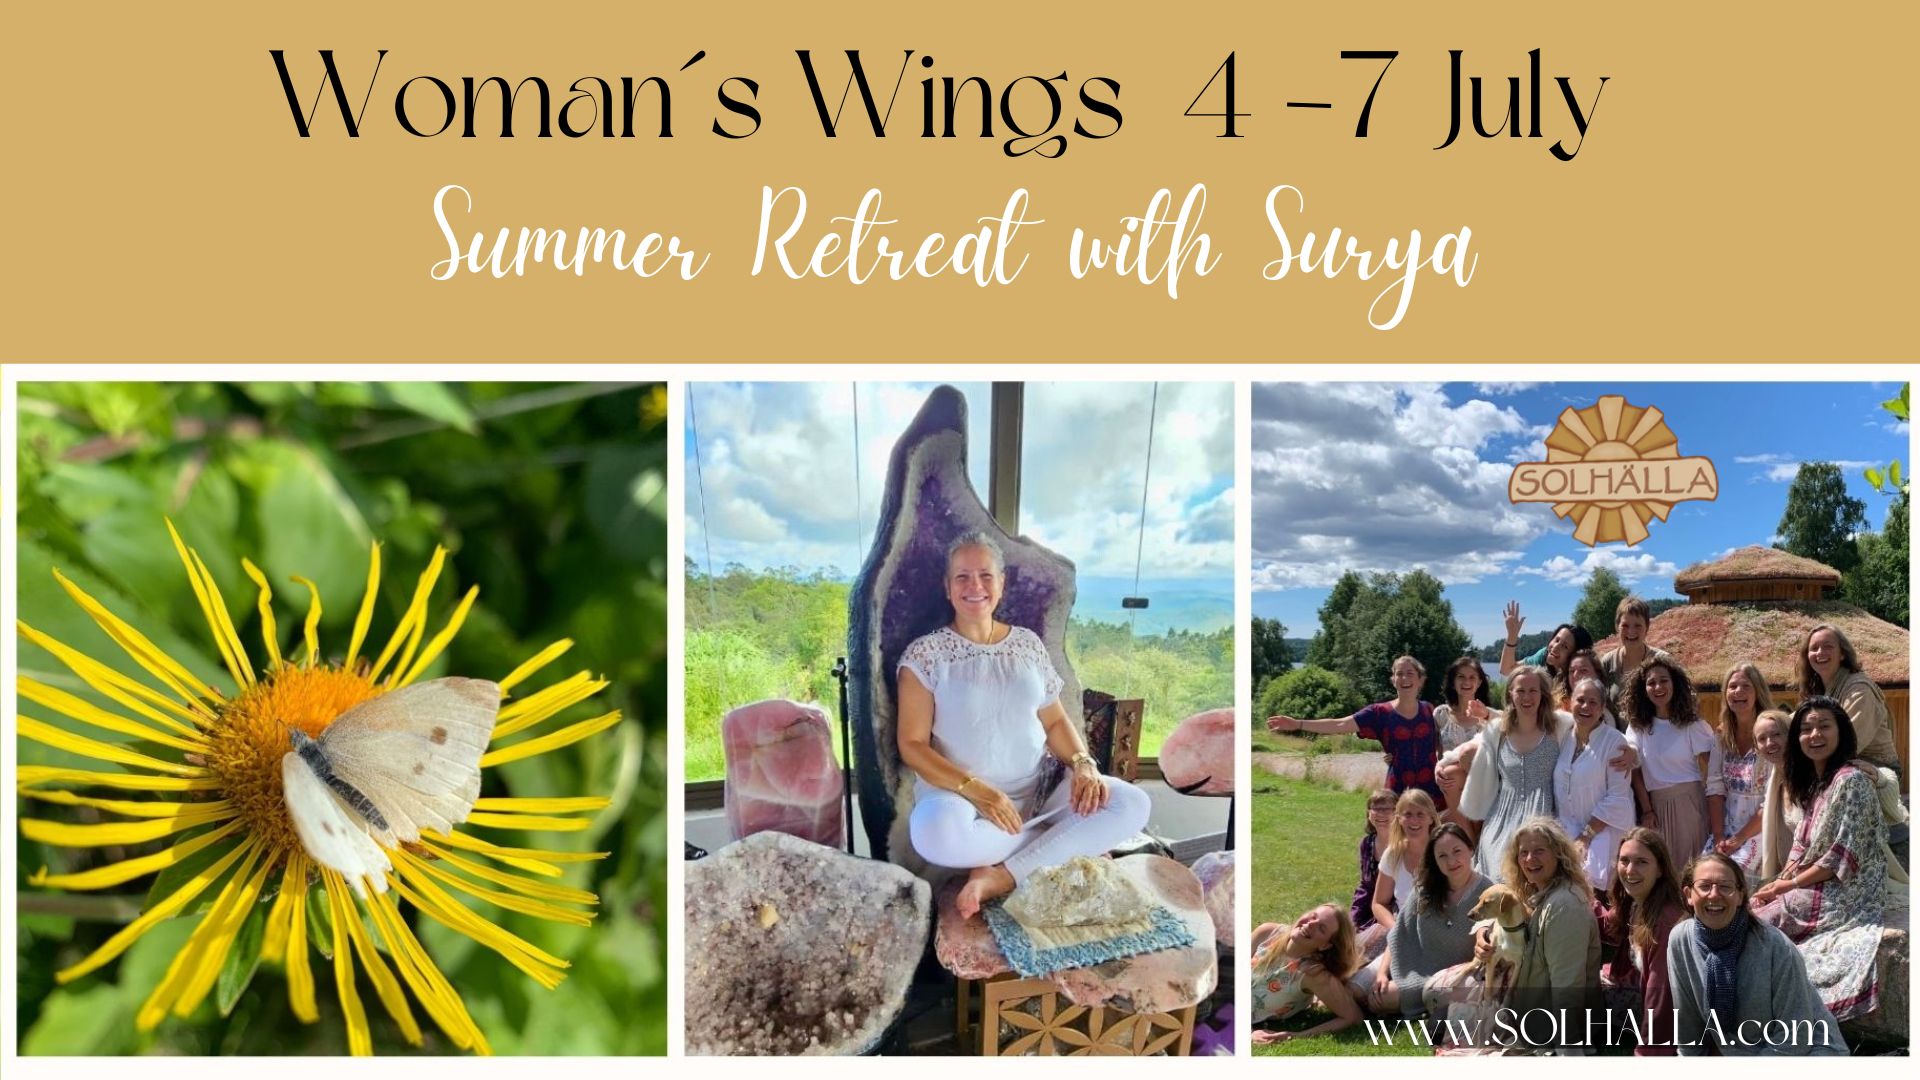 Summer Retreat with Surya -Sweden